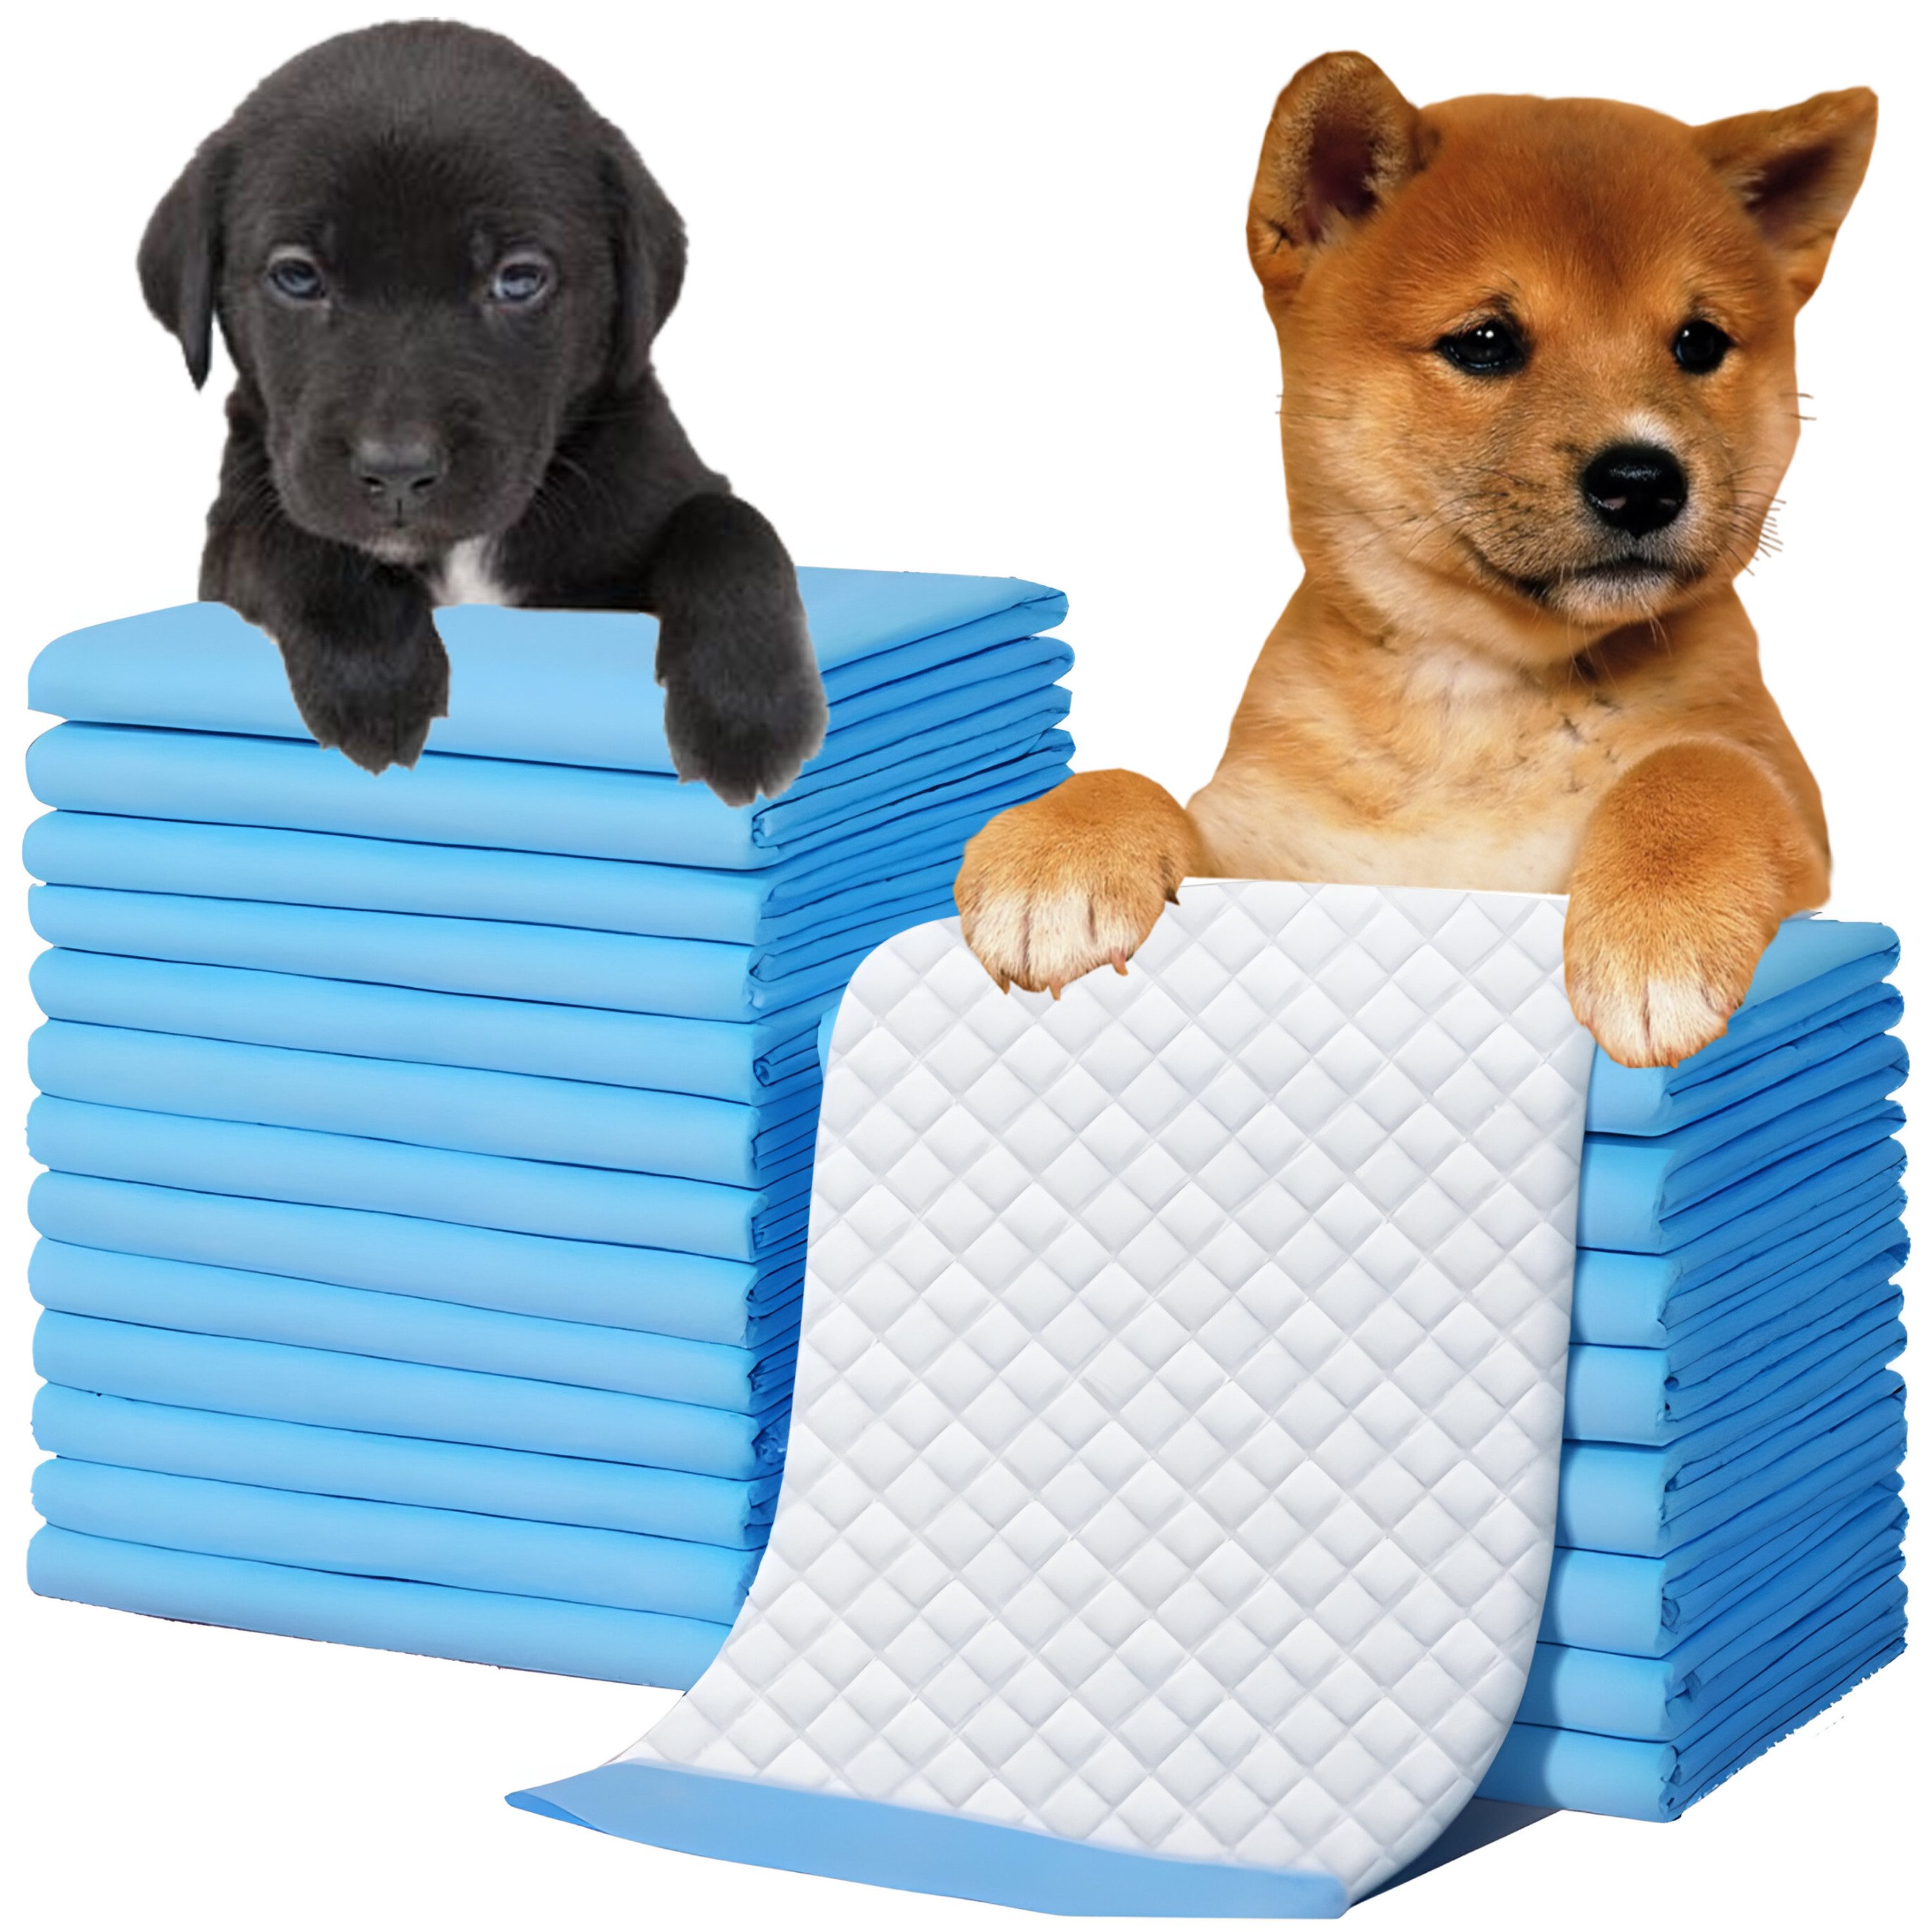 Retoo Hundetoilette Trainingsunterlagen Welpenunterlagen Hunde Toilette Welpen Puppy Pads, Welpenunterlagen Hunde Toilette Welpen Puppy